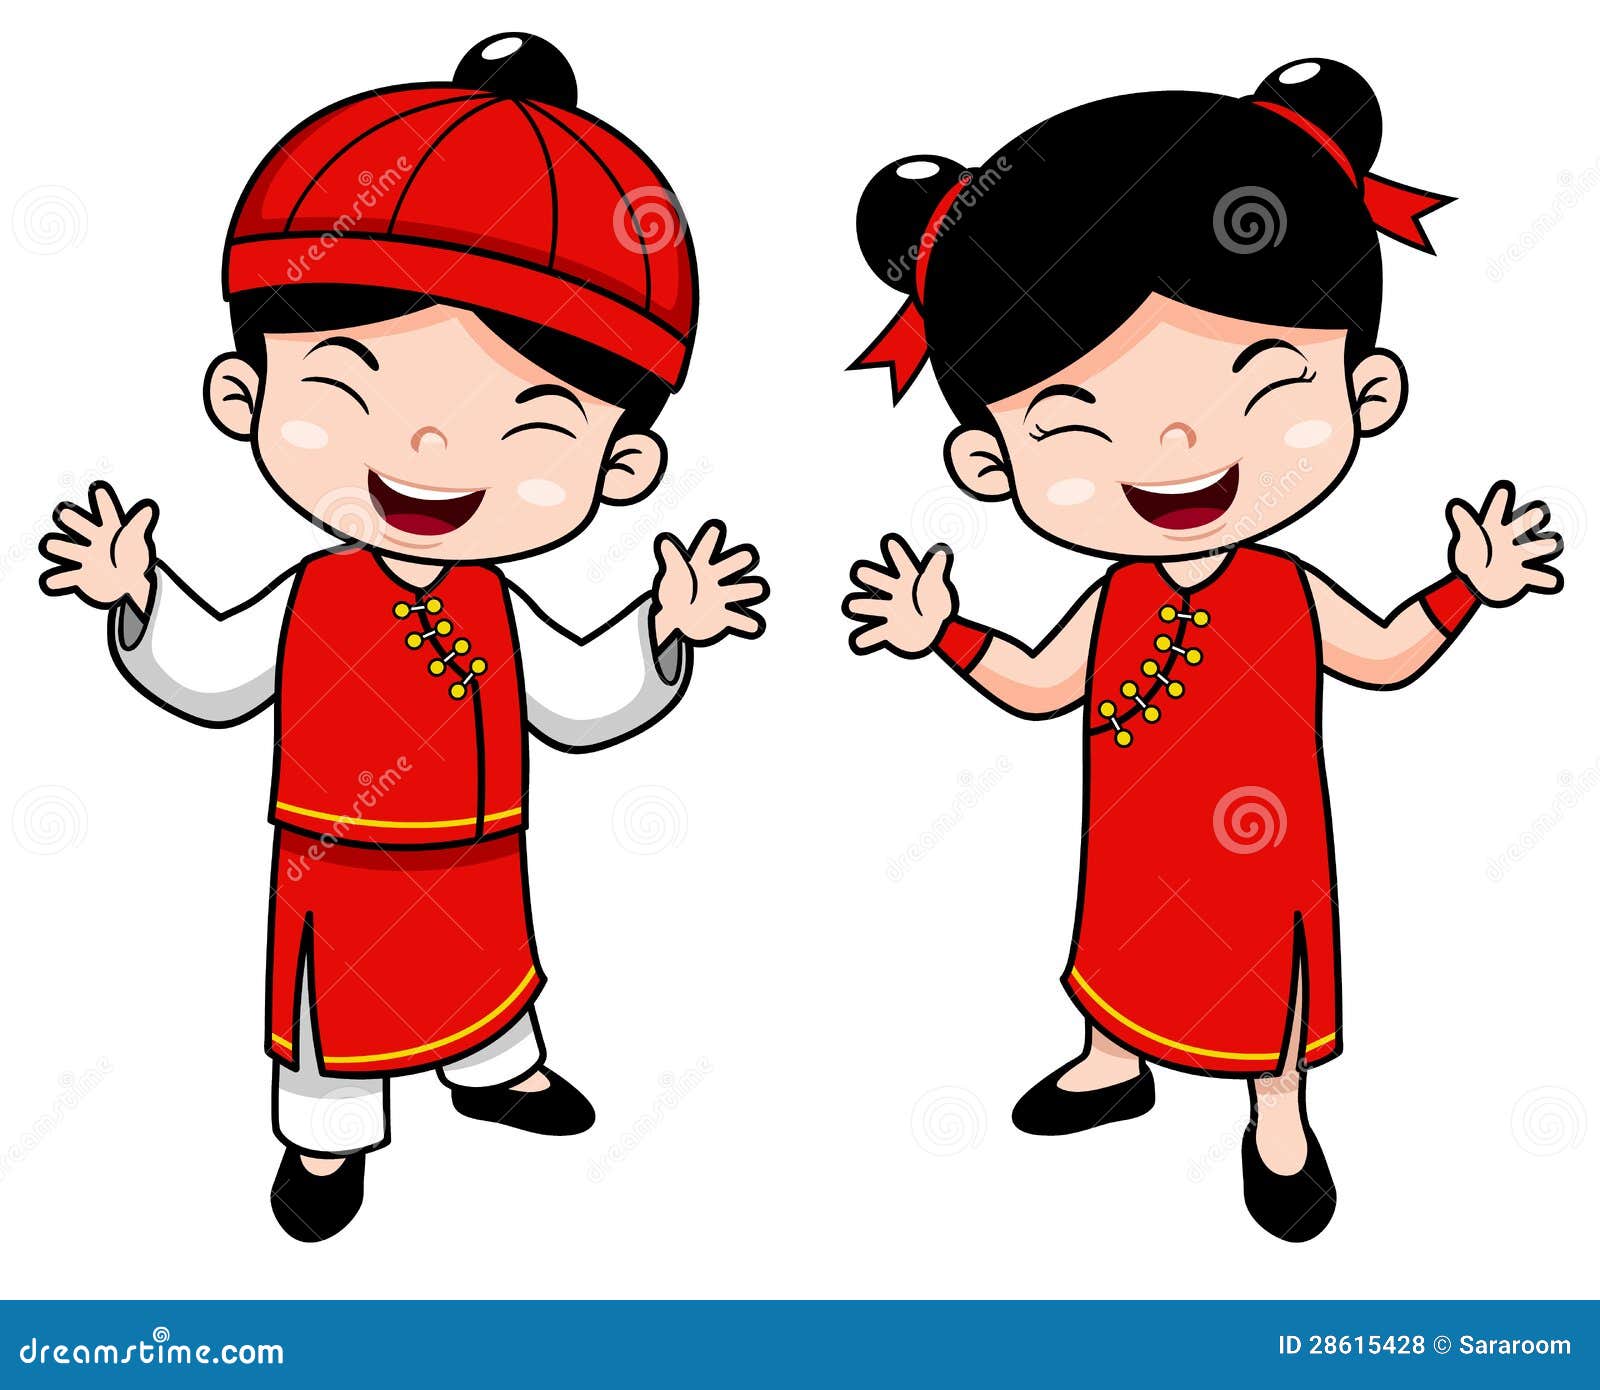 动画片中国人孩子向量例证 插画包括有动画片中国人孩子